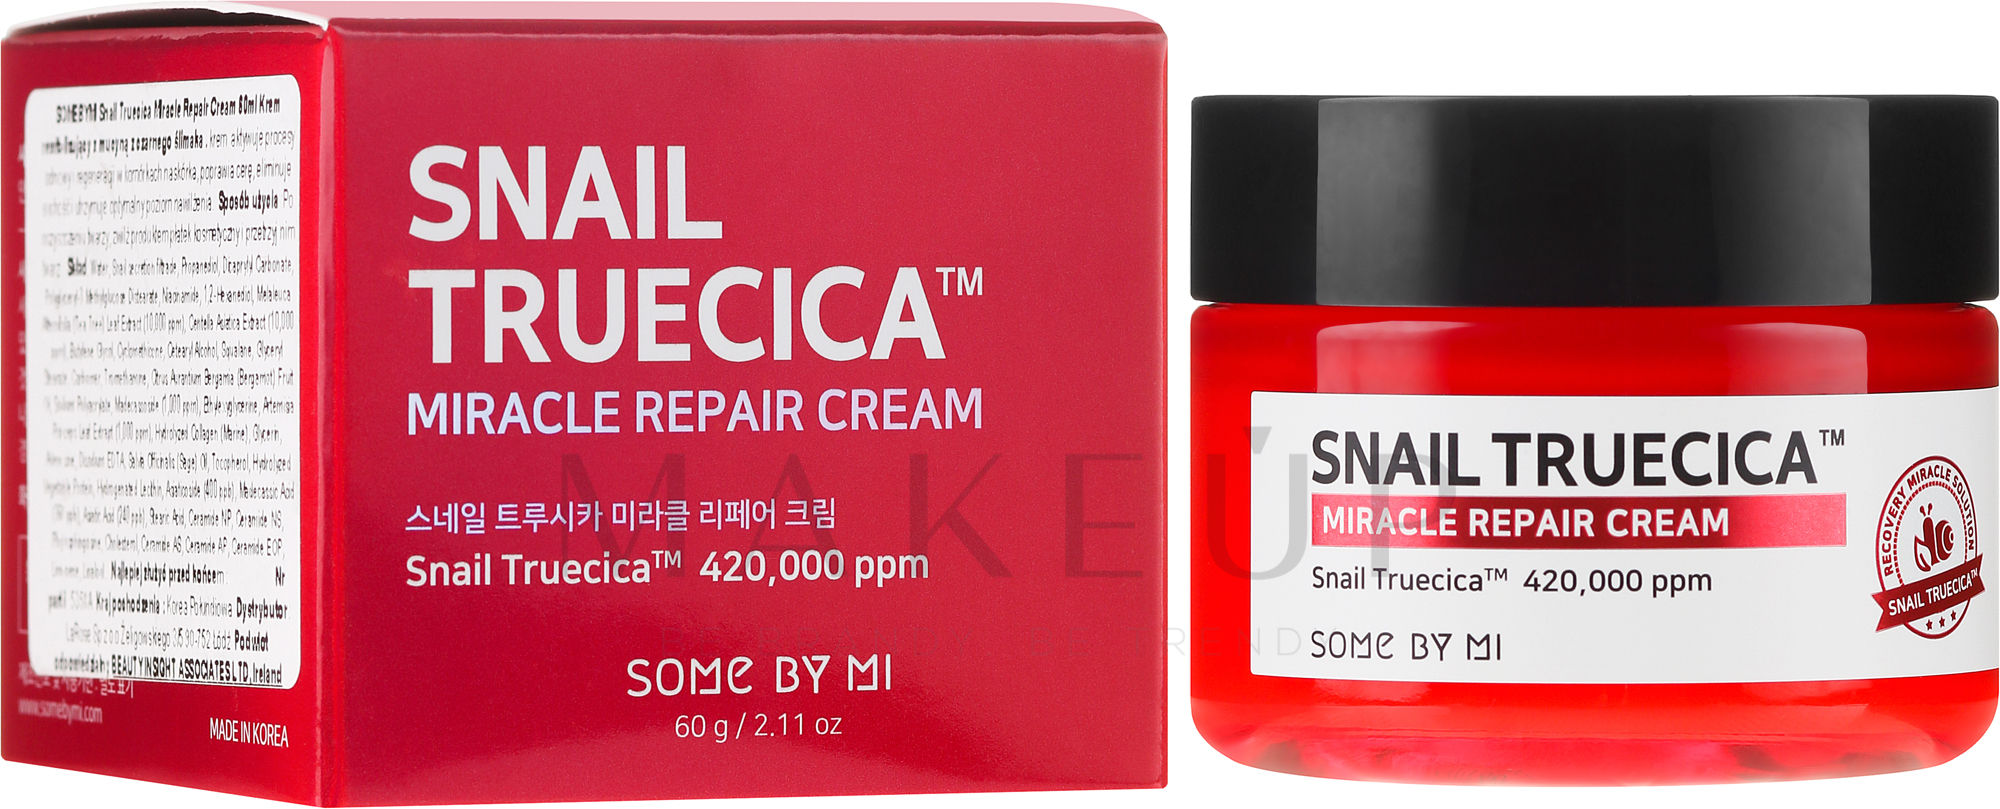 Revitalisierende Gesichtscreme mit Schneckenmucinextrakt und Ceramiden - Some By Mi Snail Truecica Miracle Repair Cream — Bild 60 g